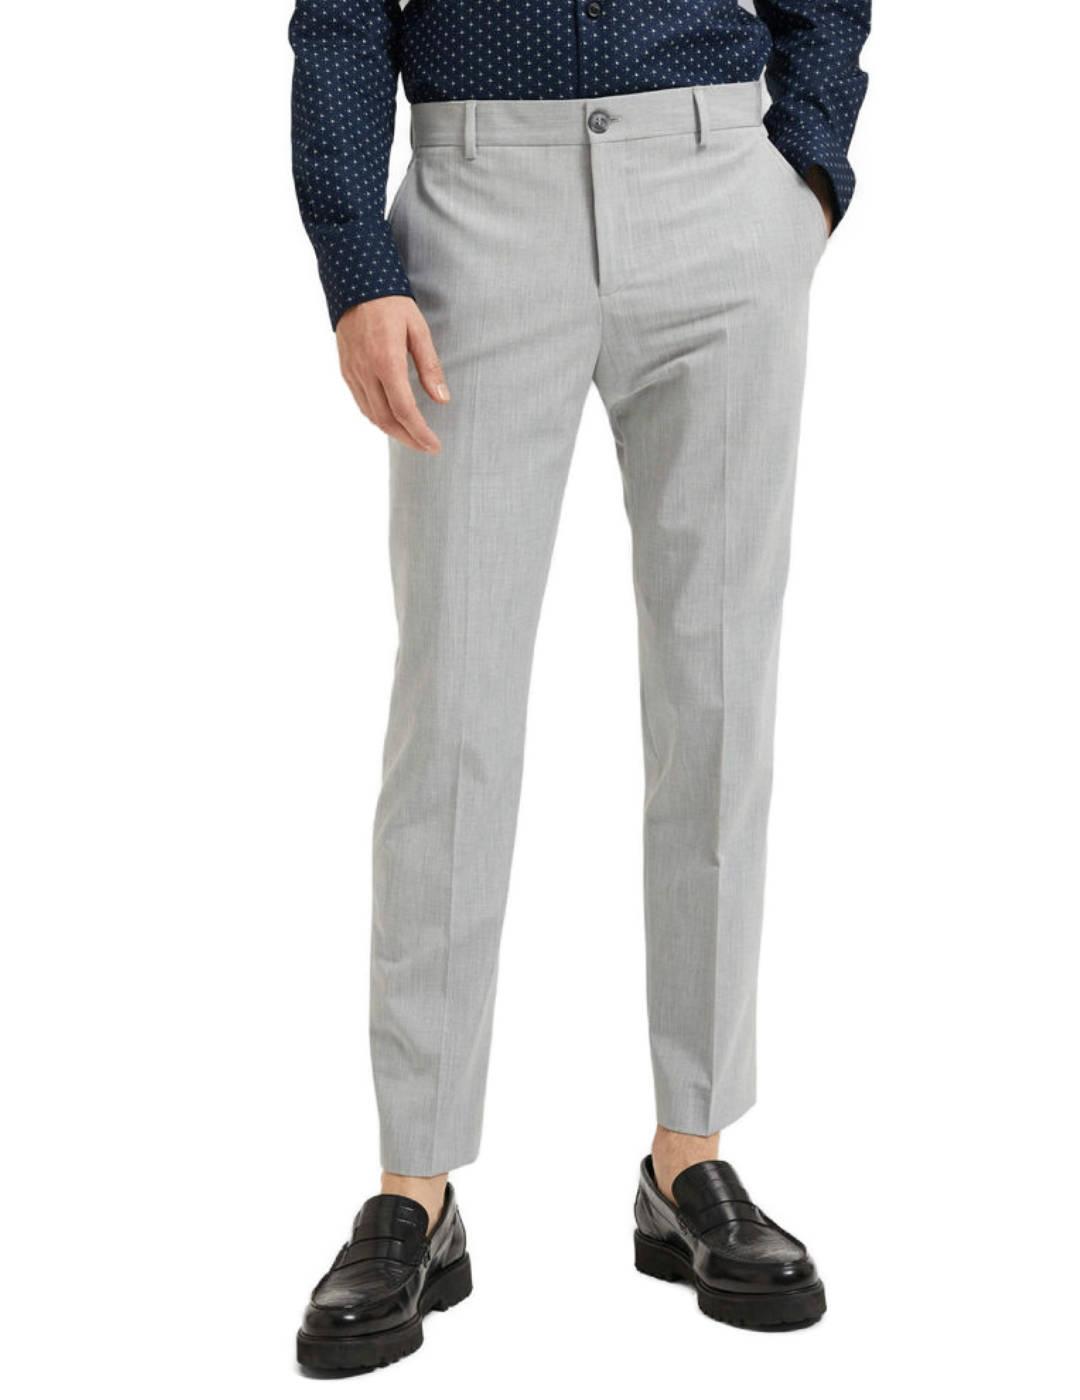 Pantalón Selected traje slim gris tobillero para hombre